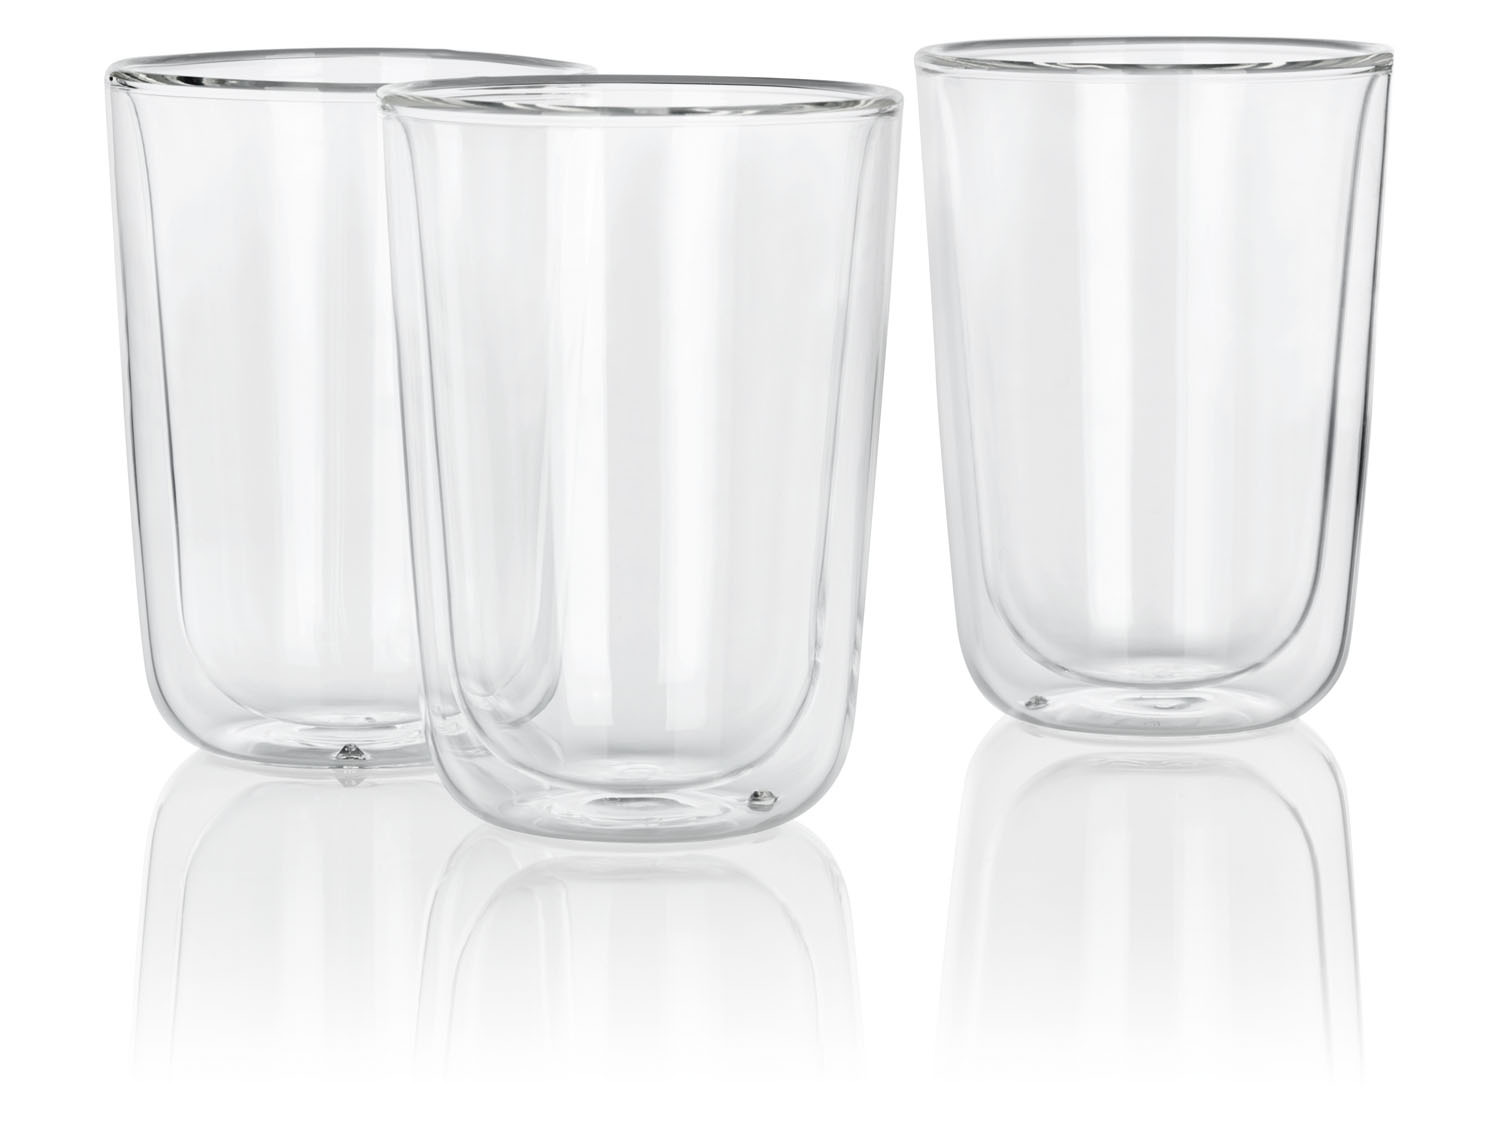 Appal peper Opname ERNESTO® Dubbelwandige glazen, borosilicaatglas